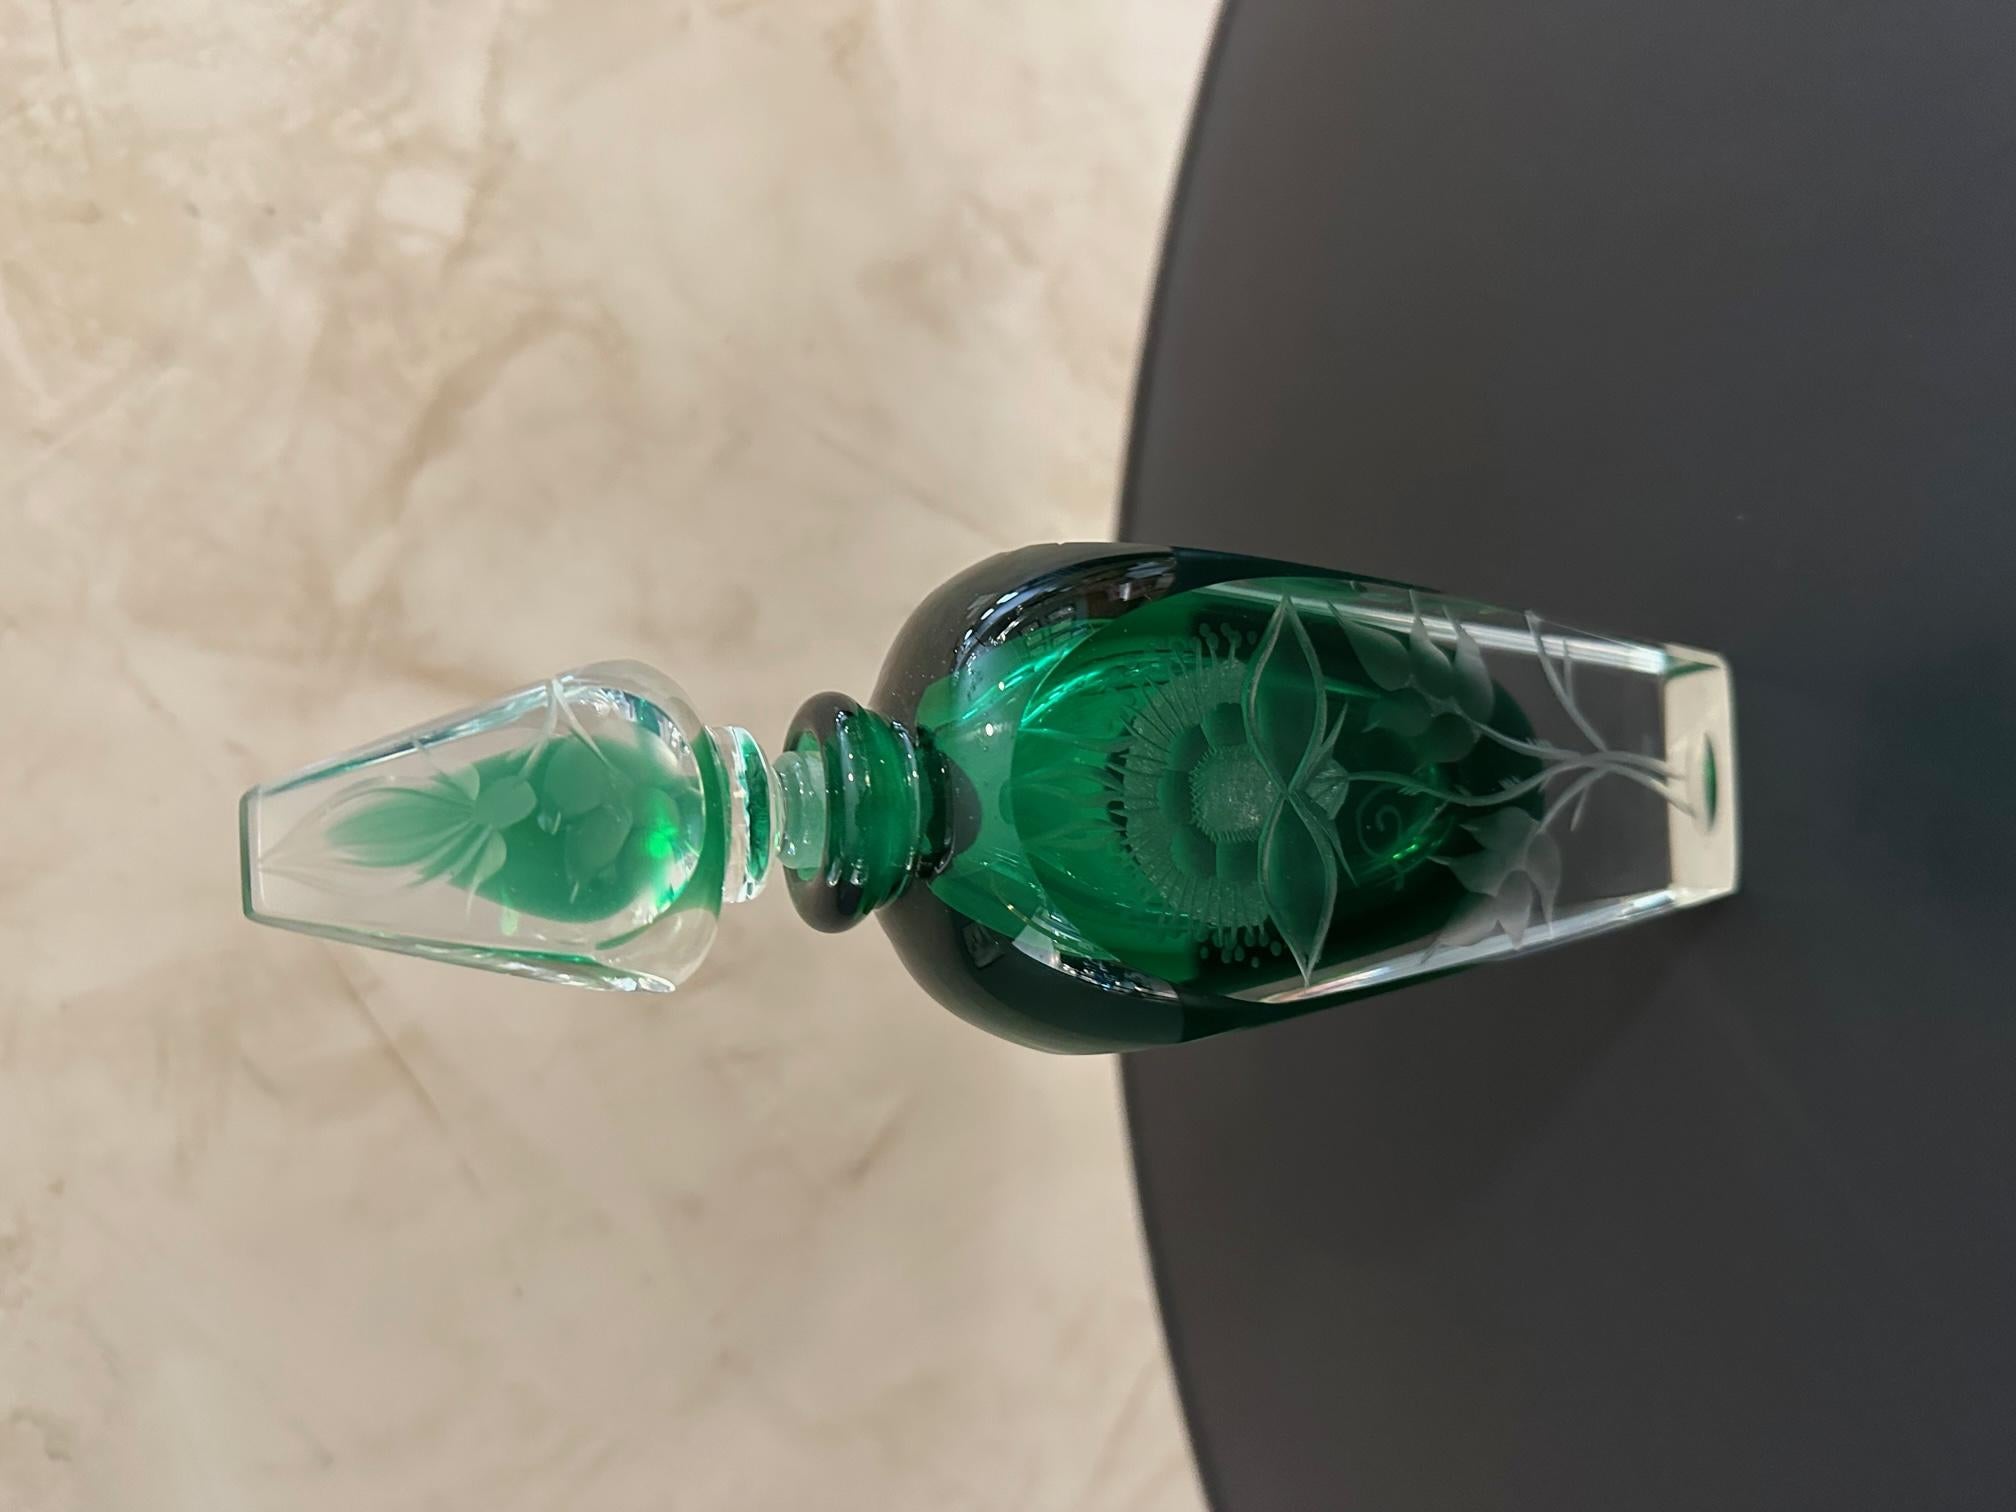 Sehr schöne Parfümflasche aus grünem Kristall mit eingravierten Blumen. Abnehmbare Kappe mit Gravur.
Sehr gute Qualität und guter Zustand.